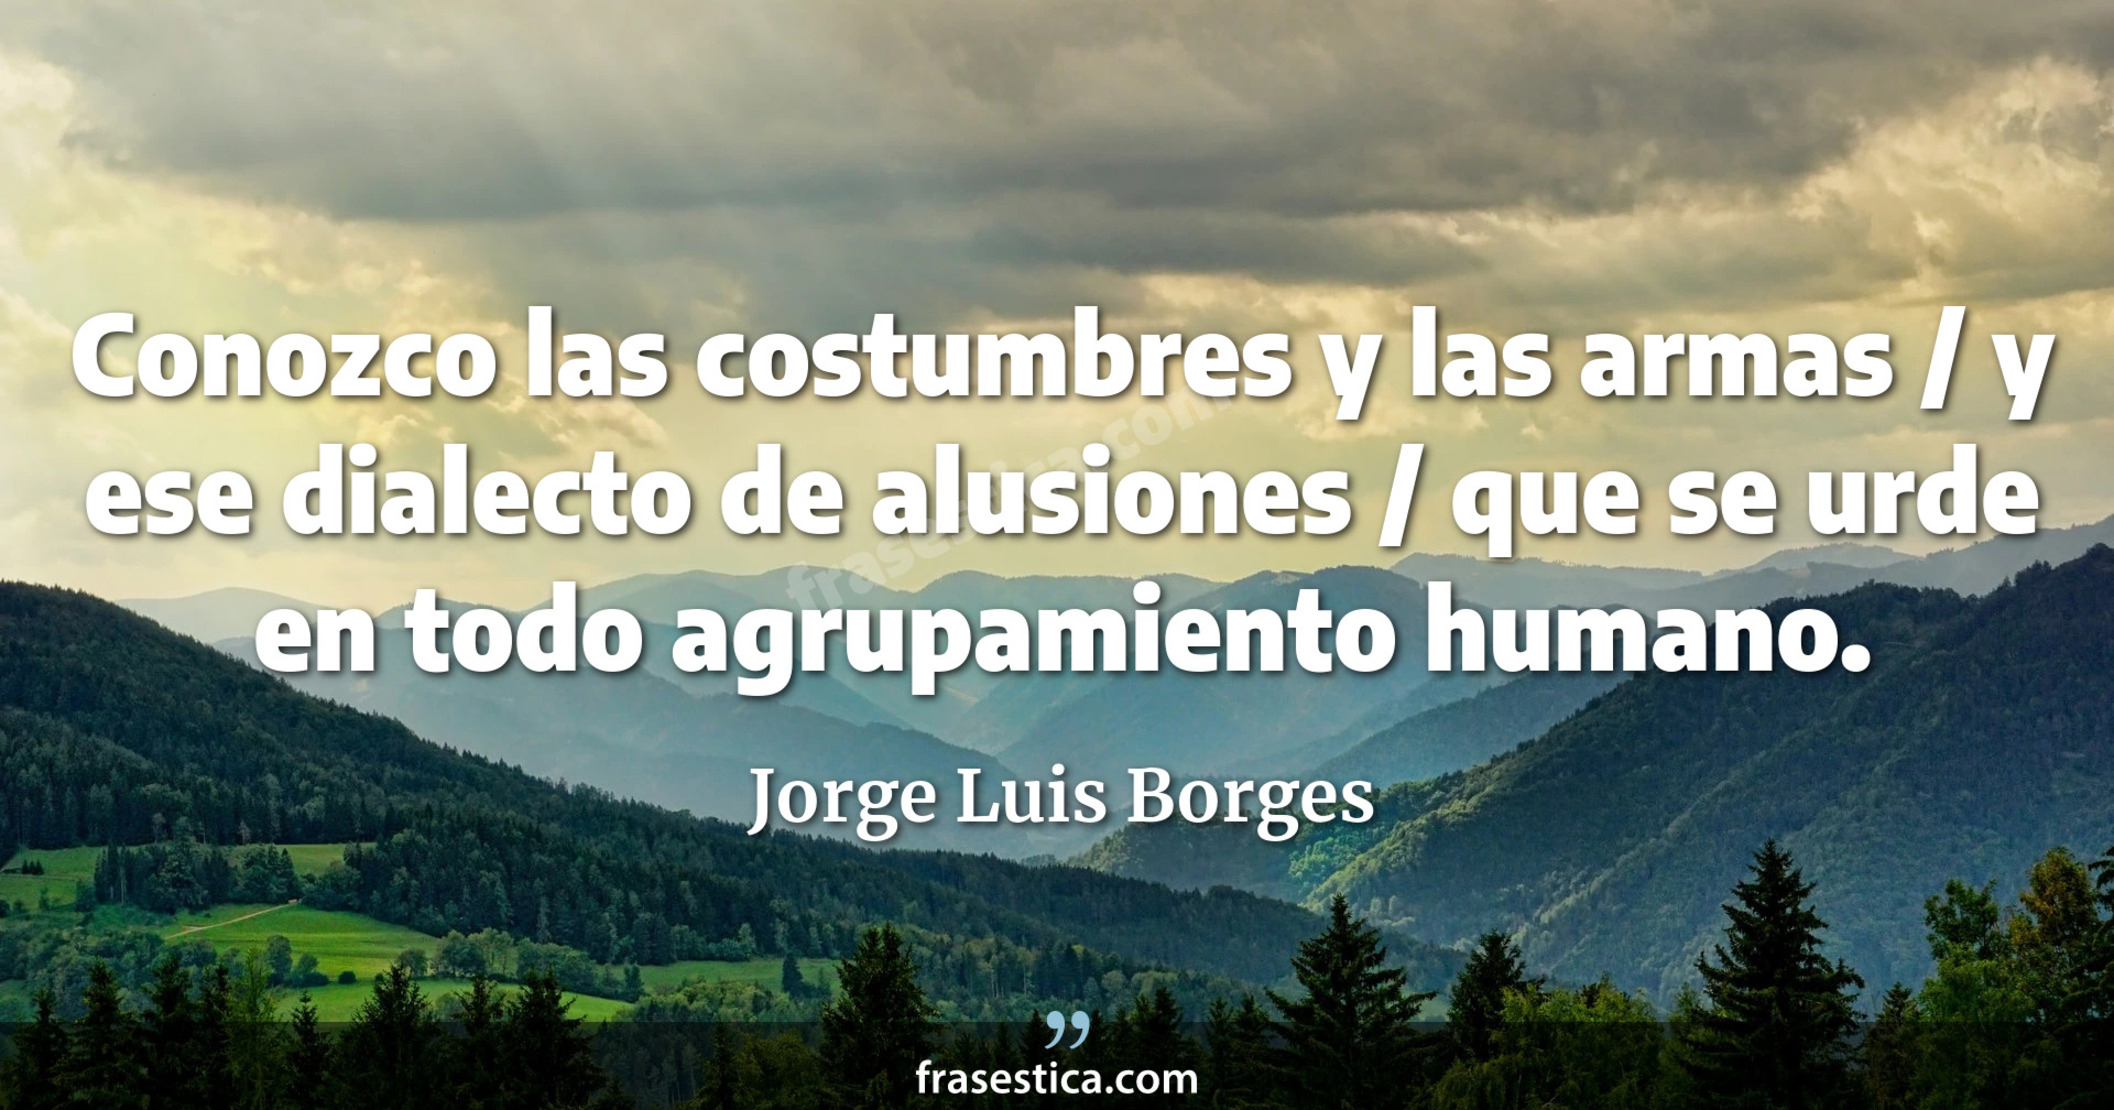 Conozco las costumbres y las armas / y ese dialecto de alusiones / que se urde en todo agrupamiento humano. - Jorge Luis Borges